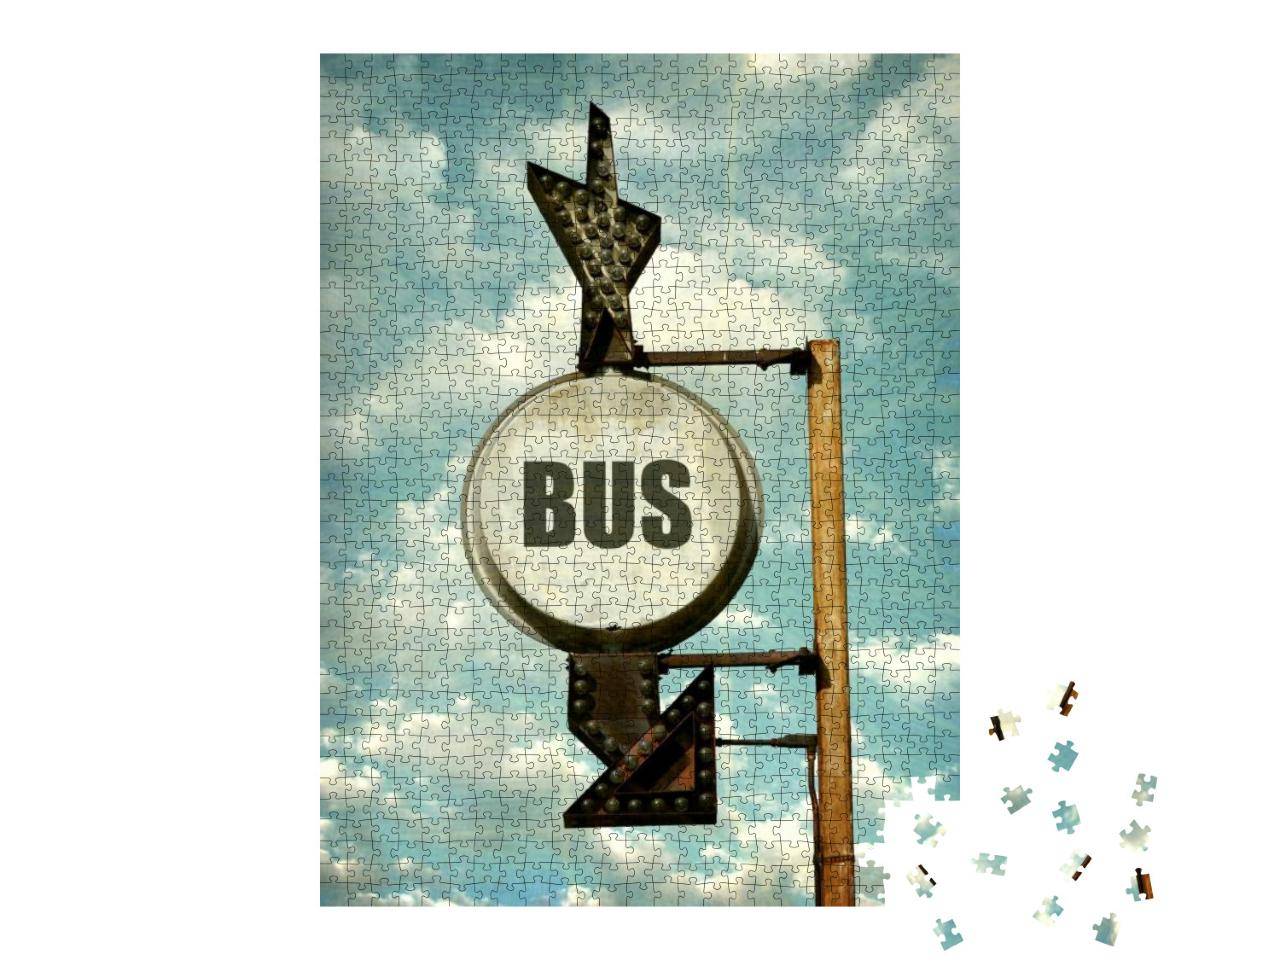 Puzzle 1000 Teile „Vintage-Foto eines Busschildes, im Hintergrund bewölkter Himmel“